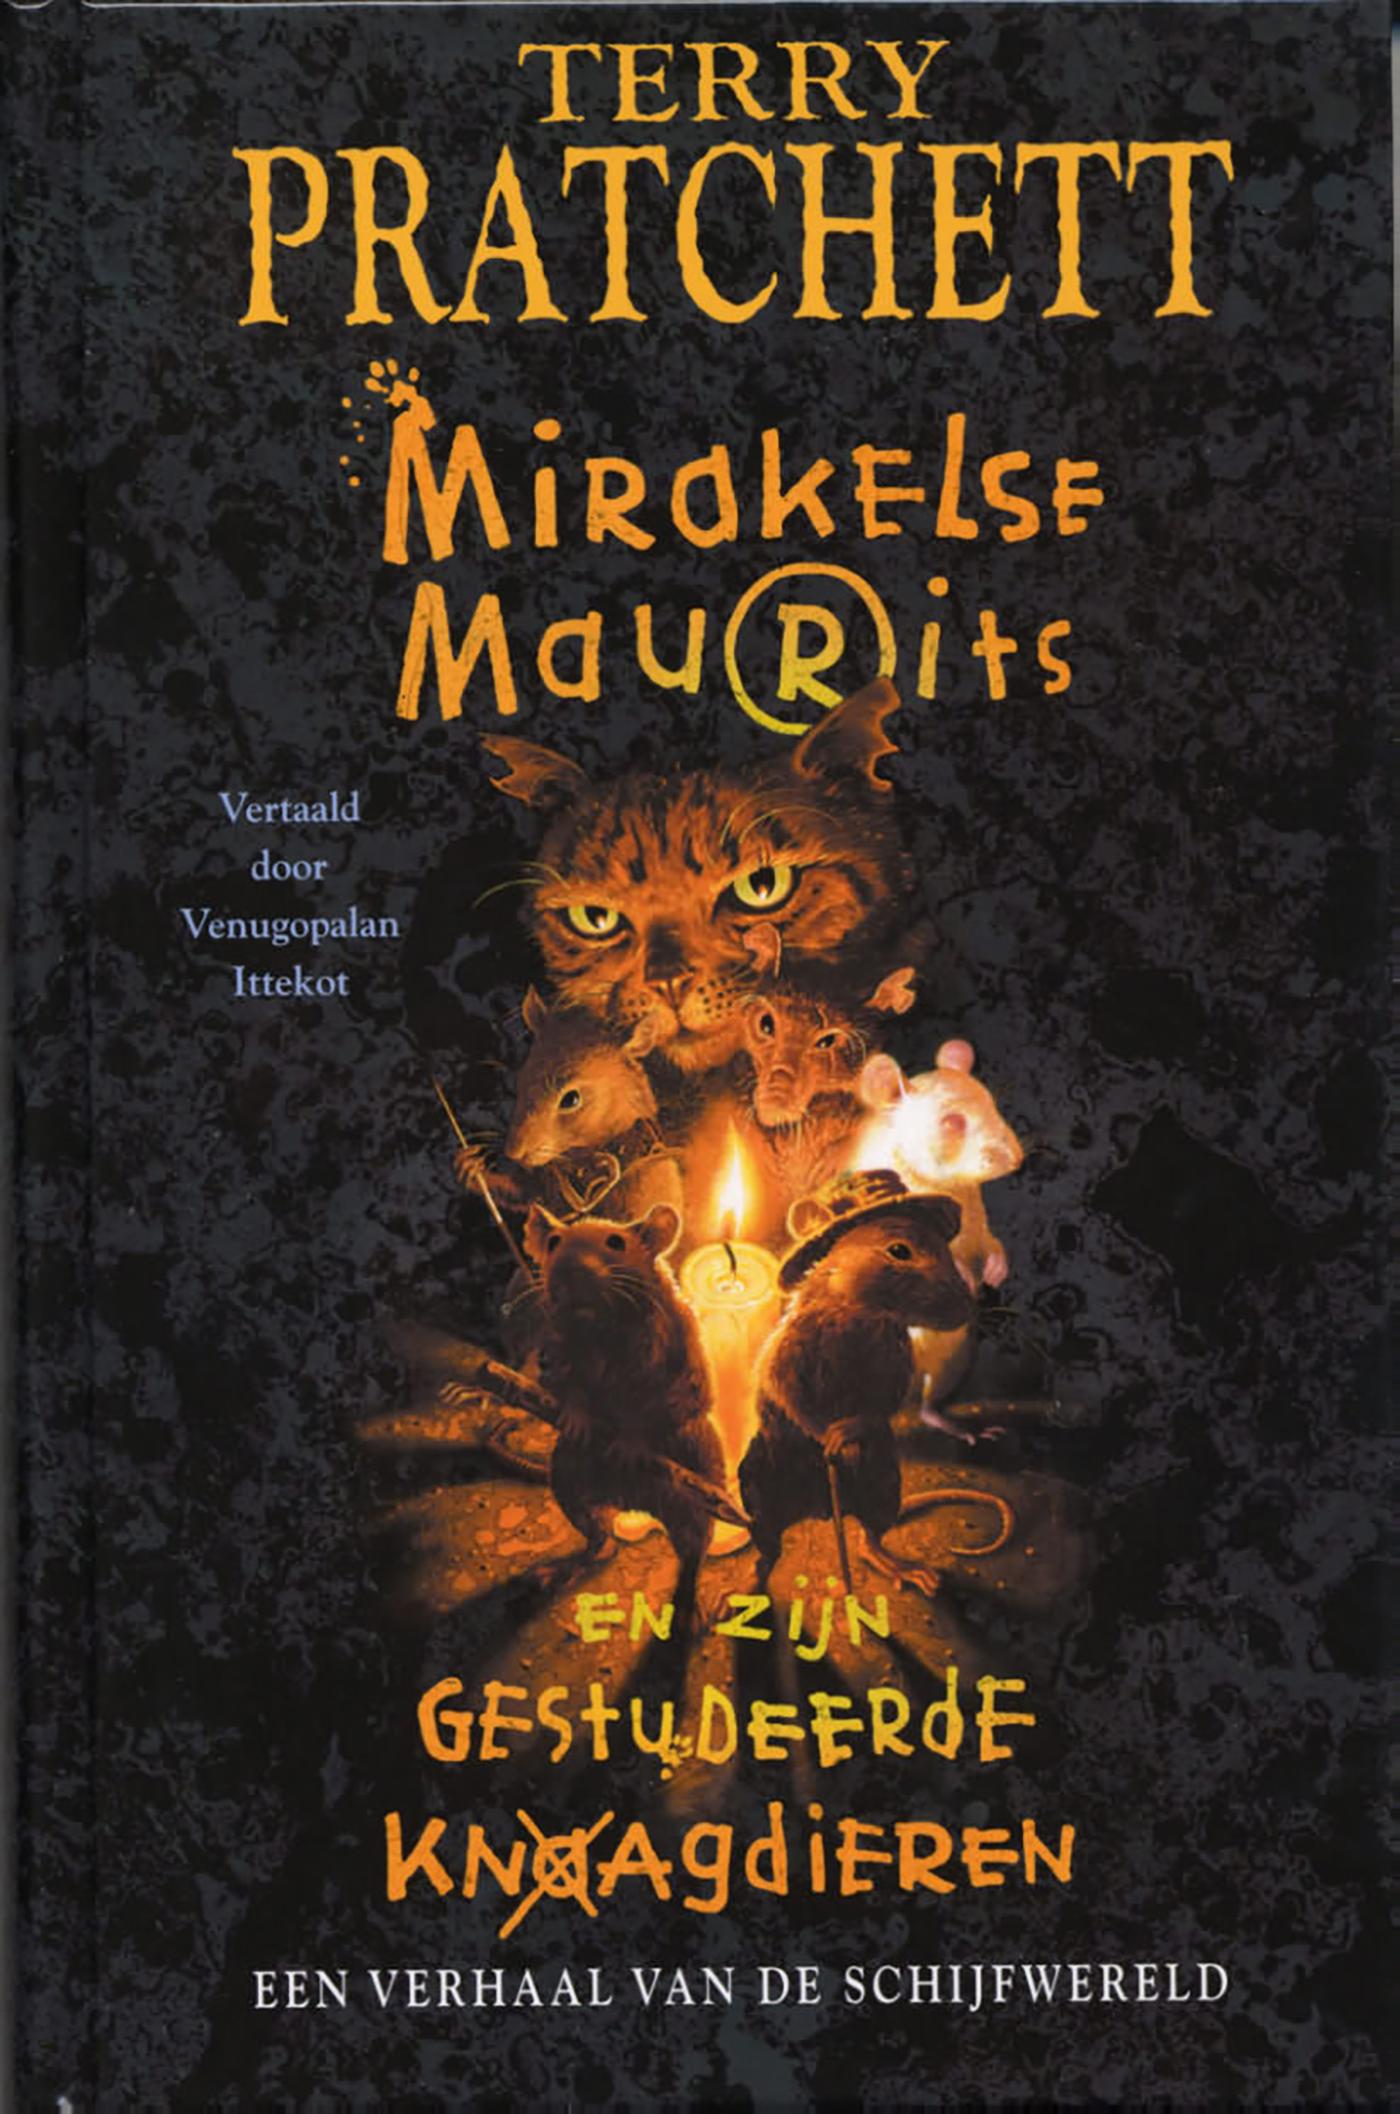 Mirakelse Maurits en zijn gestudeerde knaagdieren (Ebook)